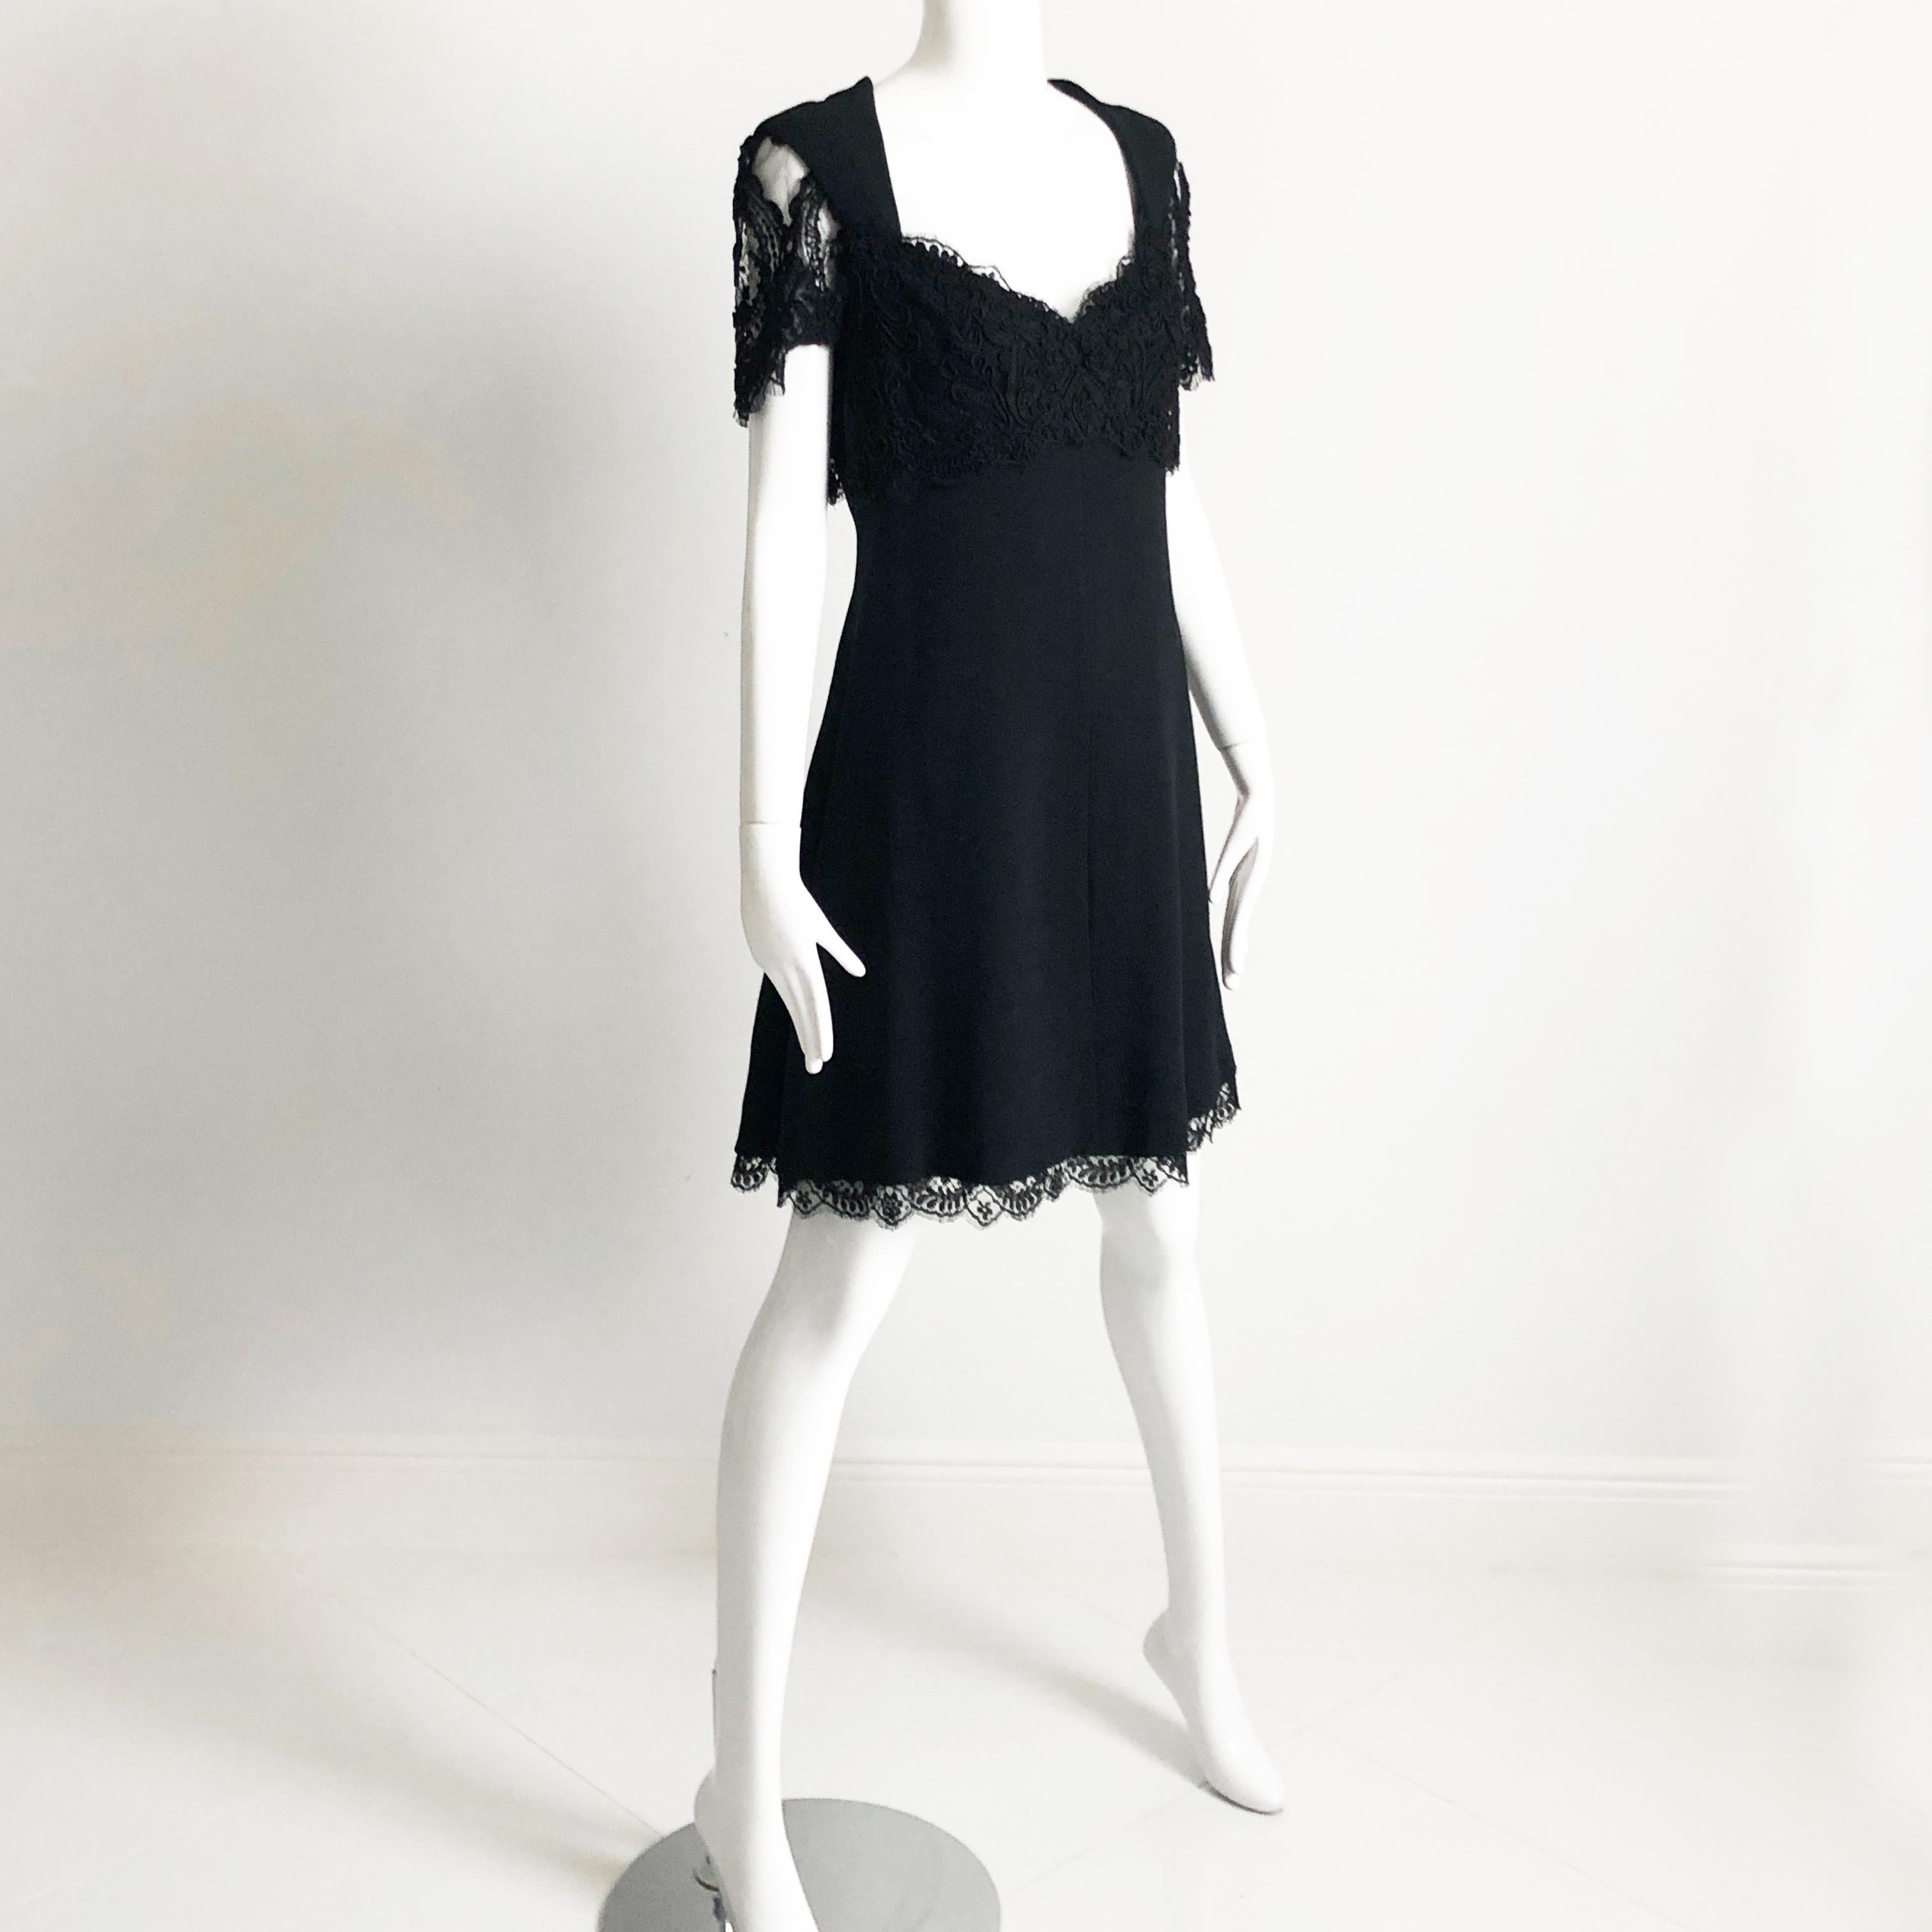 Gebrauchtes, klassisches kleines schwarzes Kleid, entworfen von Louis Feraud, wahrscheinlich Ende der 80er oder Anfang der 90er Jahre.  Es ist aus schwarzem Stoff gefertigt und verfügt über ein wunderschönes, überschnittenes Spitzenpaneel im